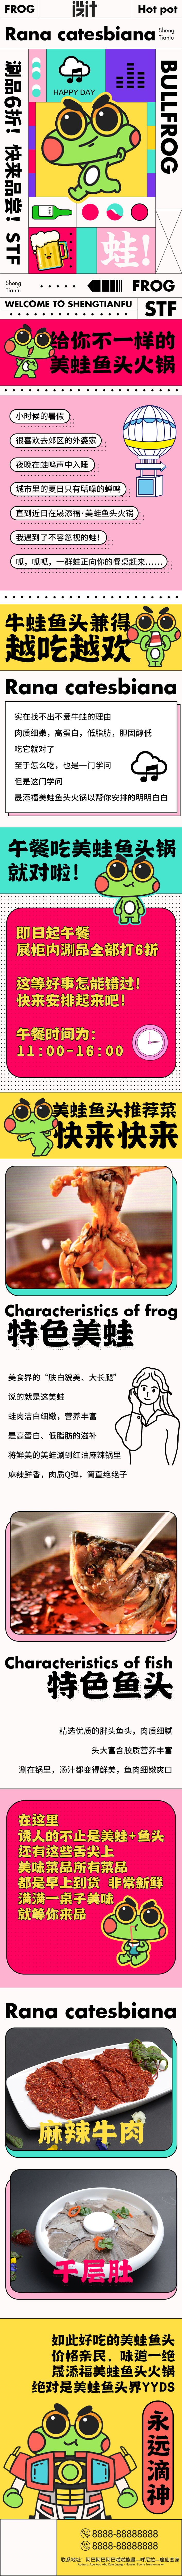 美蛙鱼广告语图片